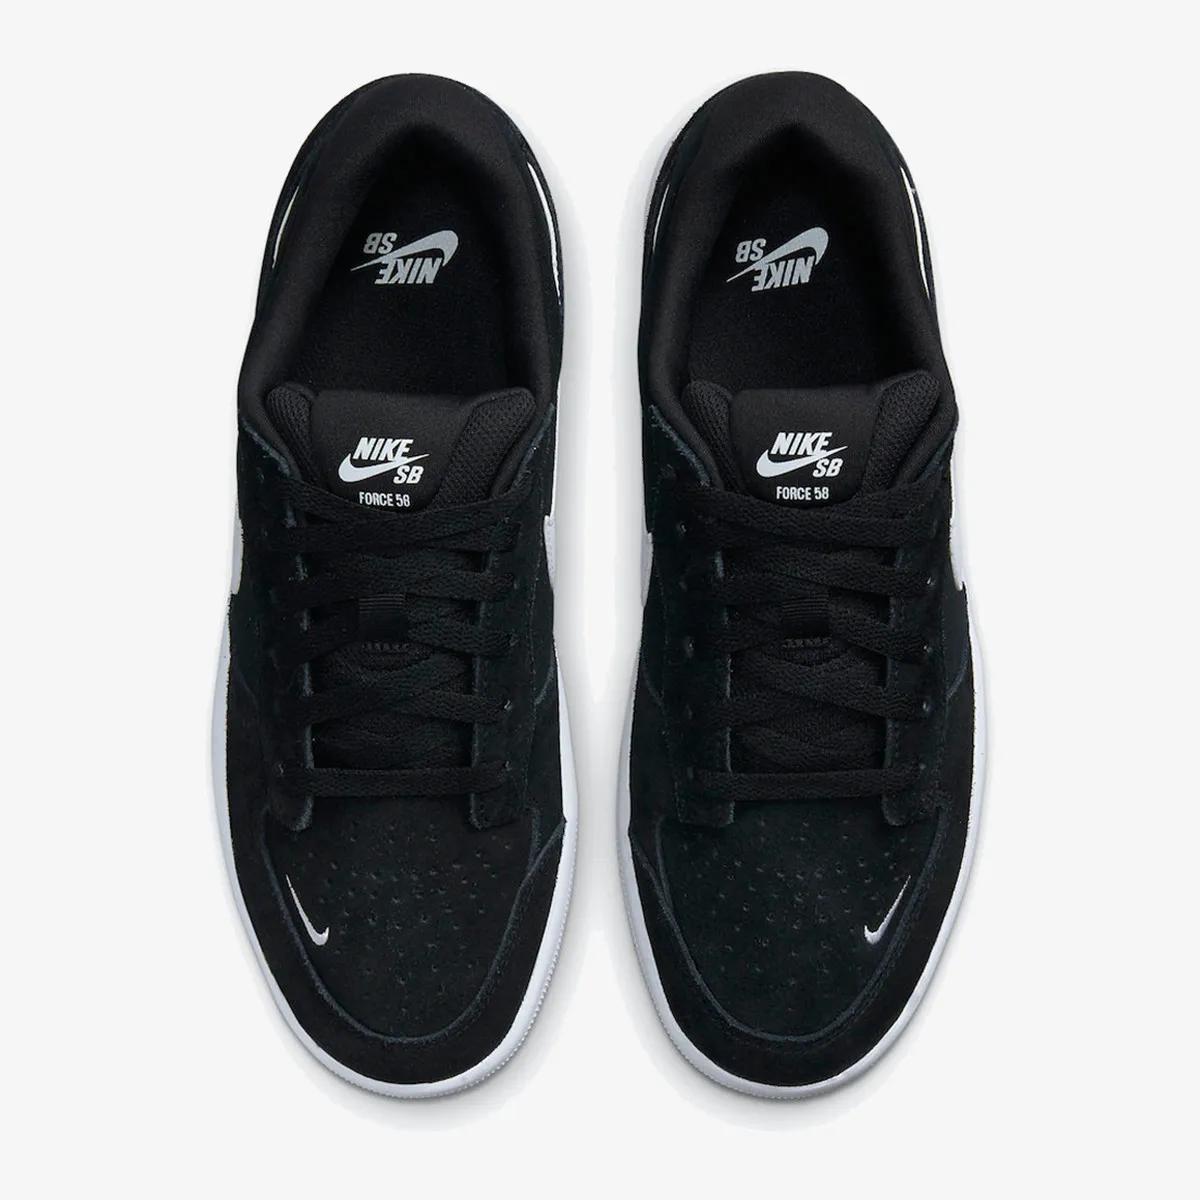 Nike SB Force 58 